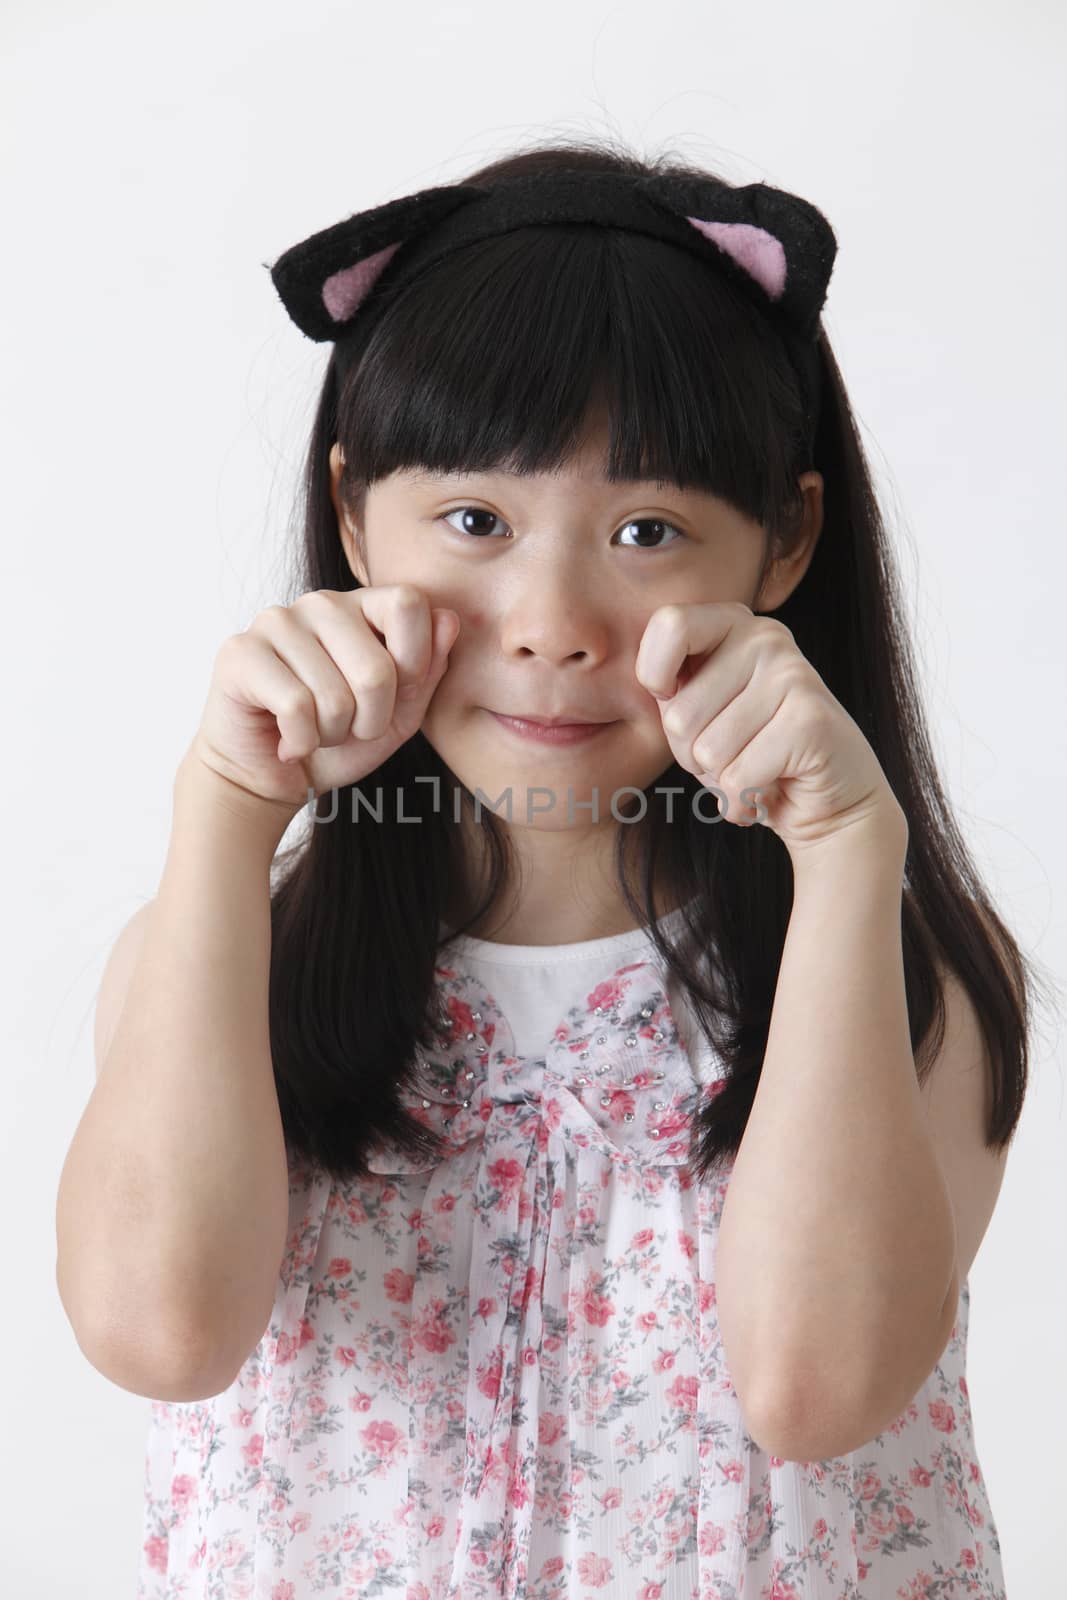 chinese girl wearing cute hair band looking at camera